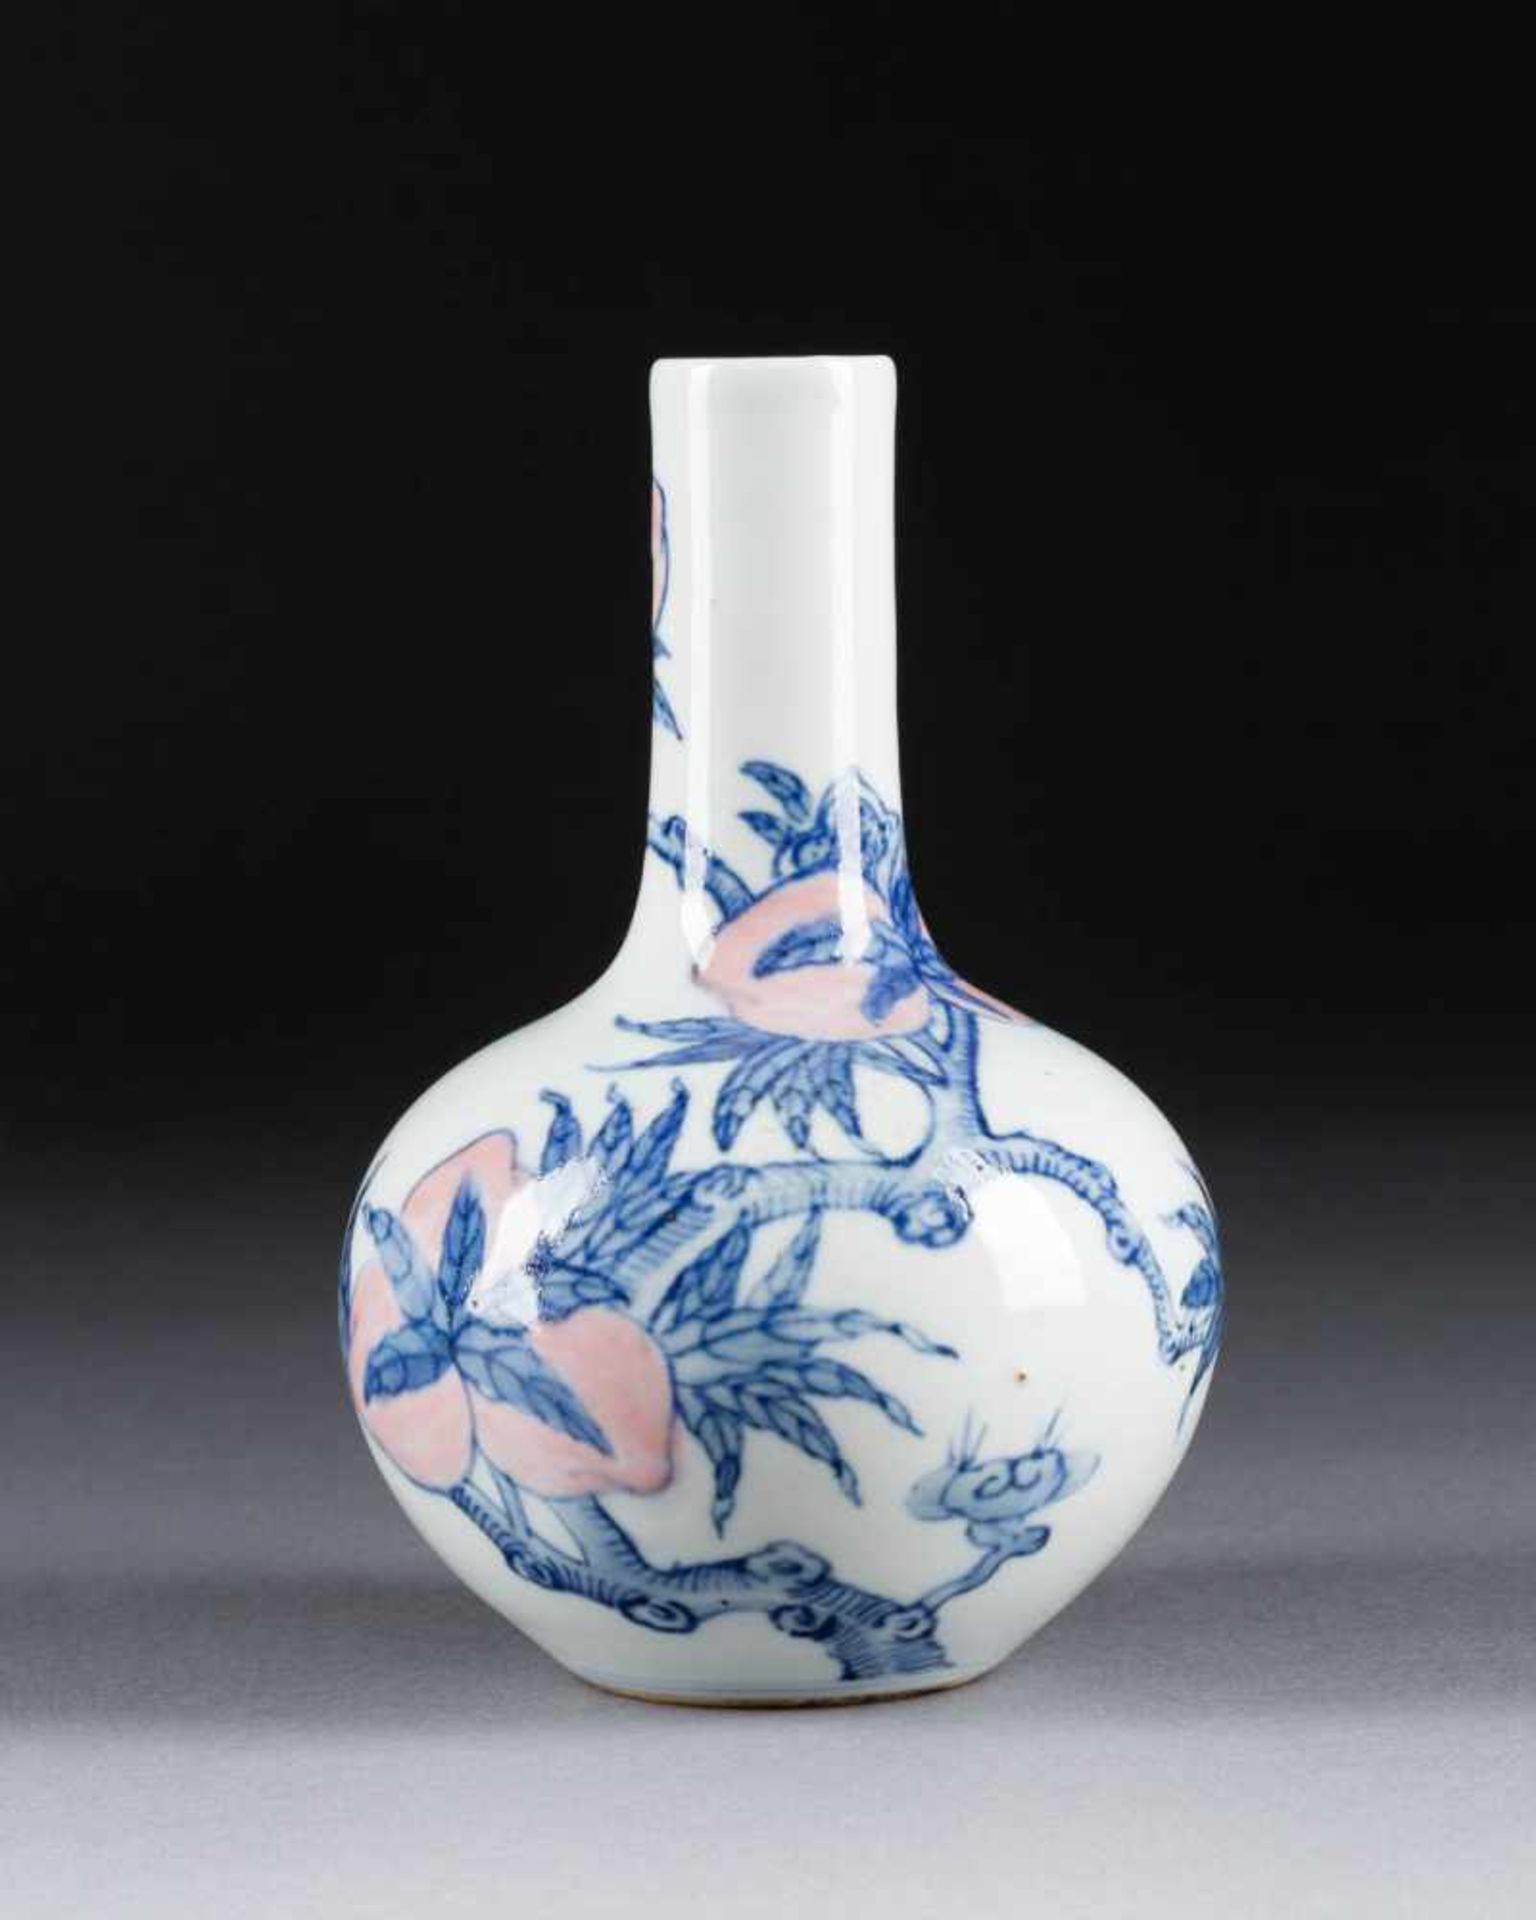 KLEINE VASE MIT PFIRSISCHENDEKOR China, wohl um 1900 Porzellan, unterglasurblaue Malerei. H. 17,5